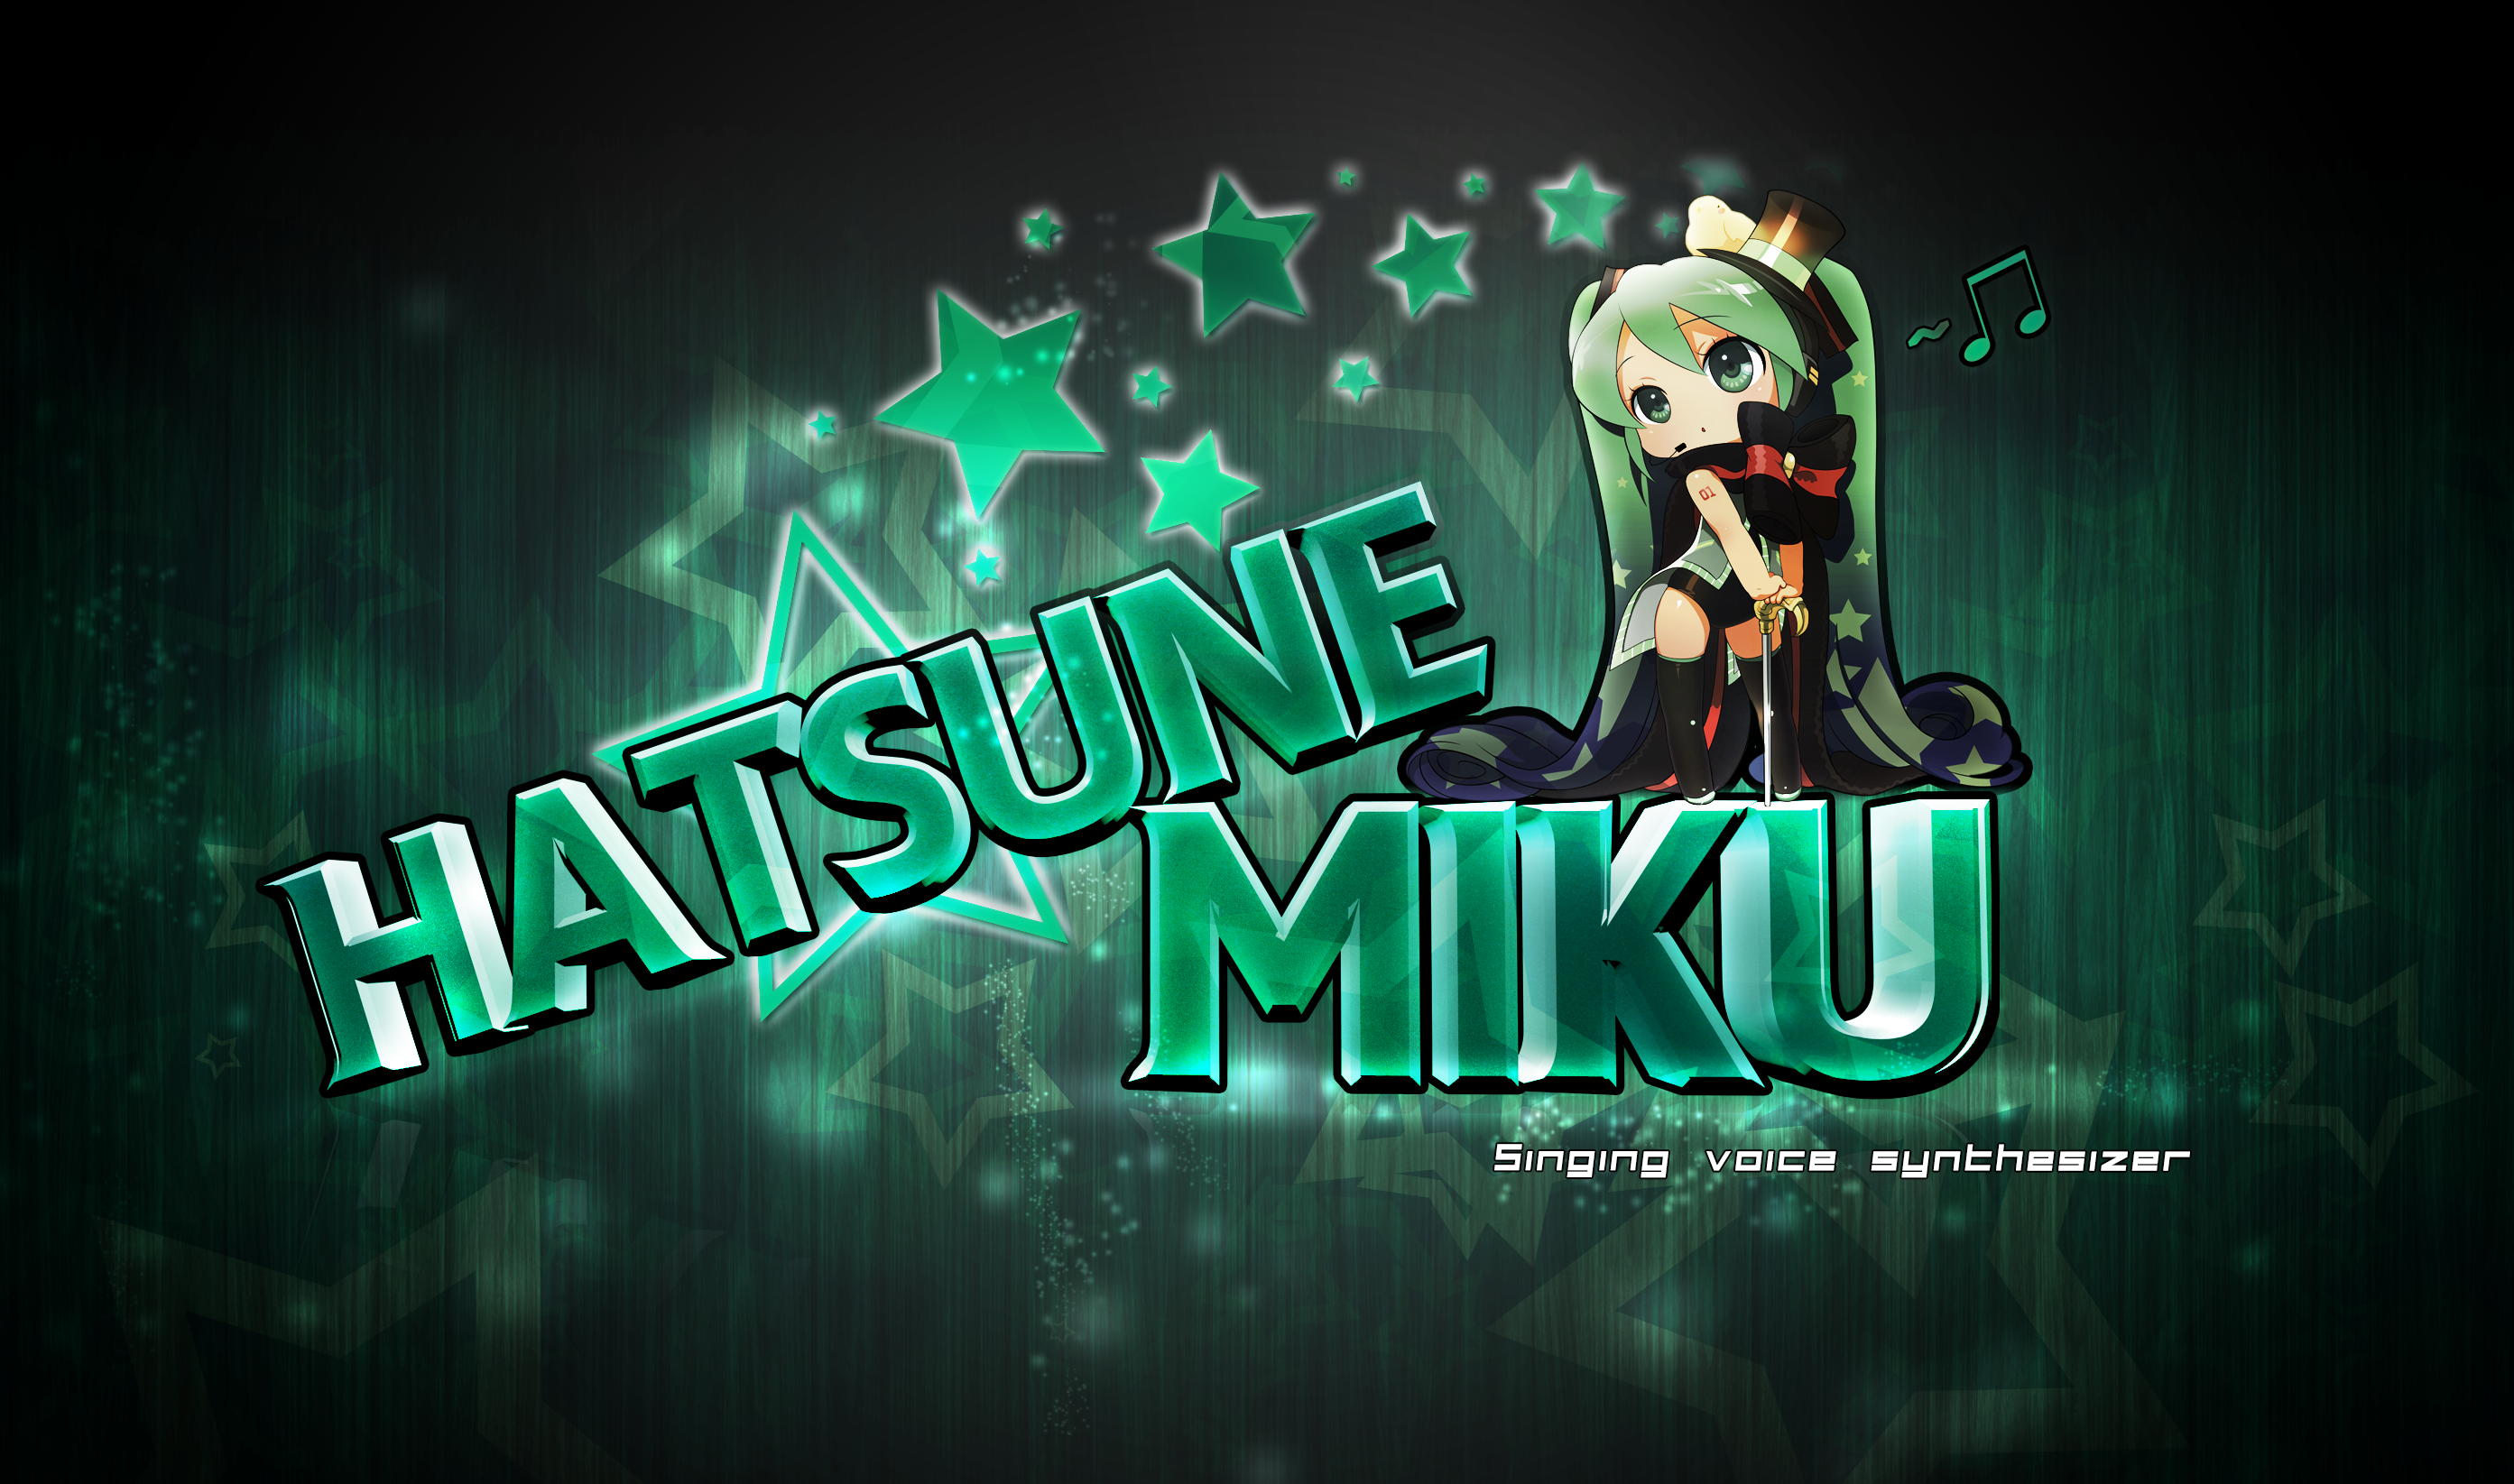 Hatsune Miku Stars Logo/Wallpaper by Kiwaso